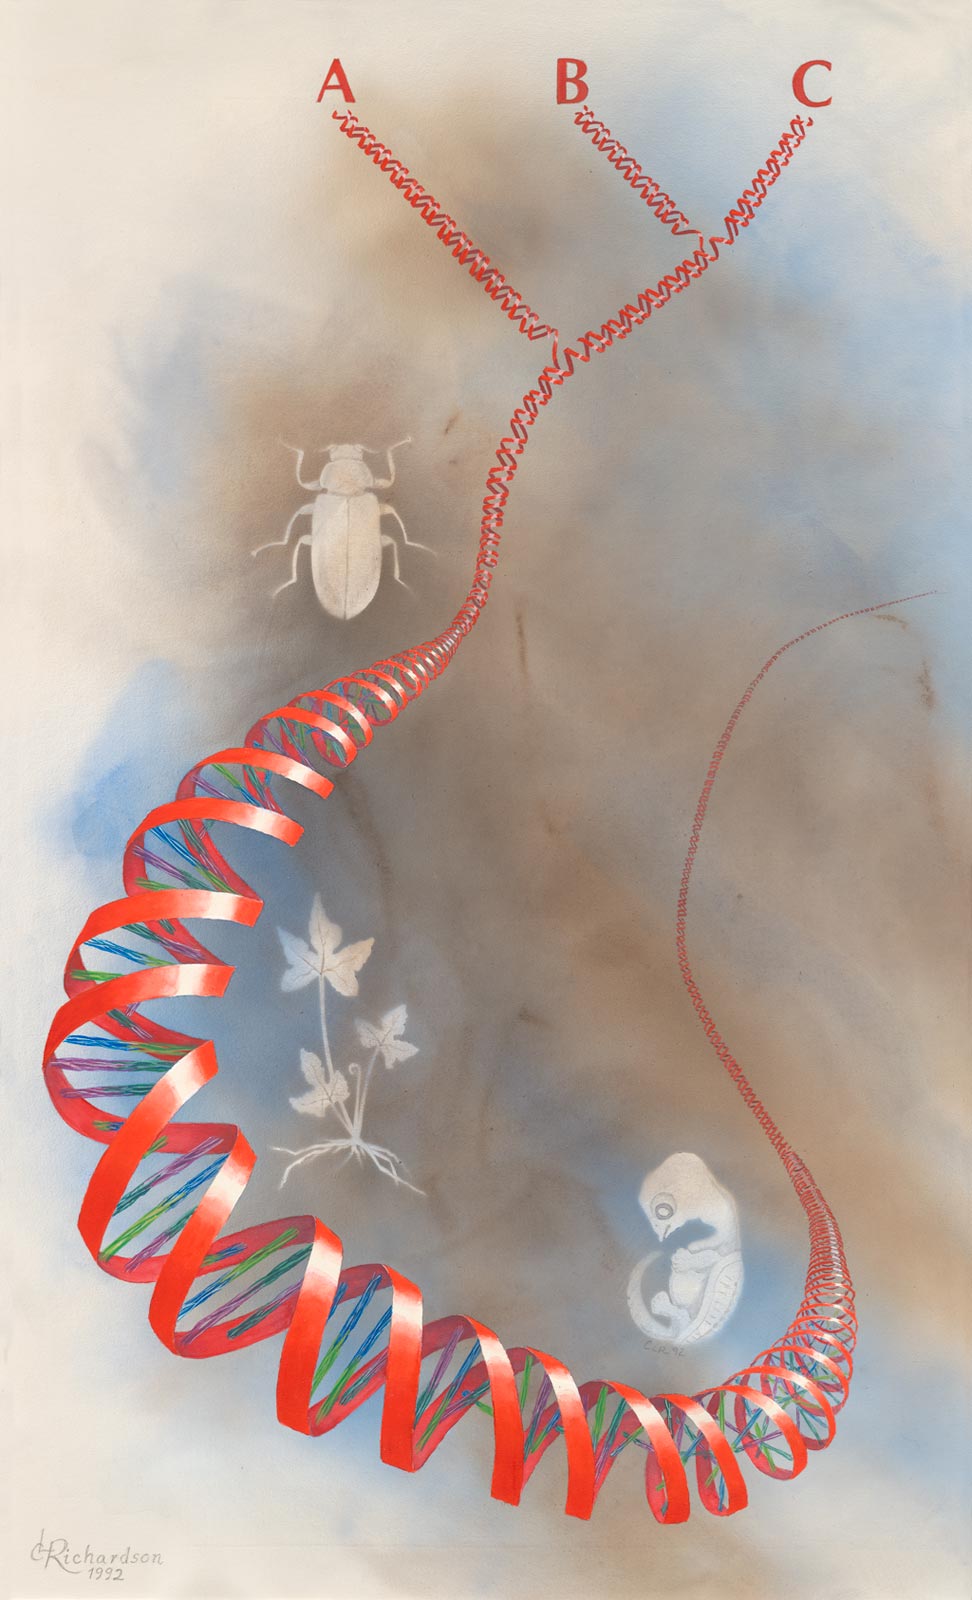 DNA ribbon illustration